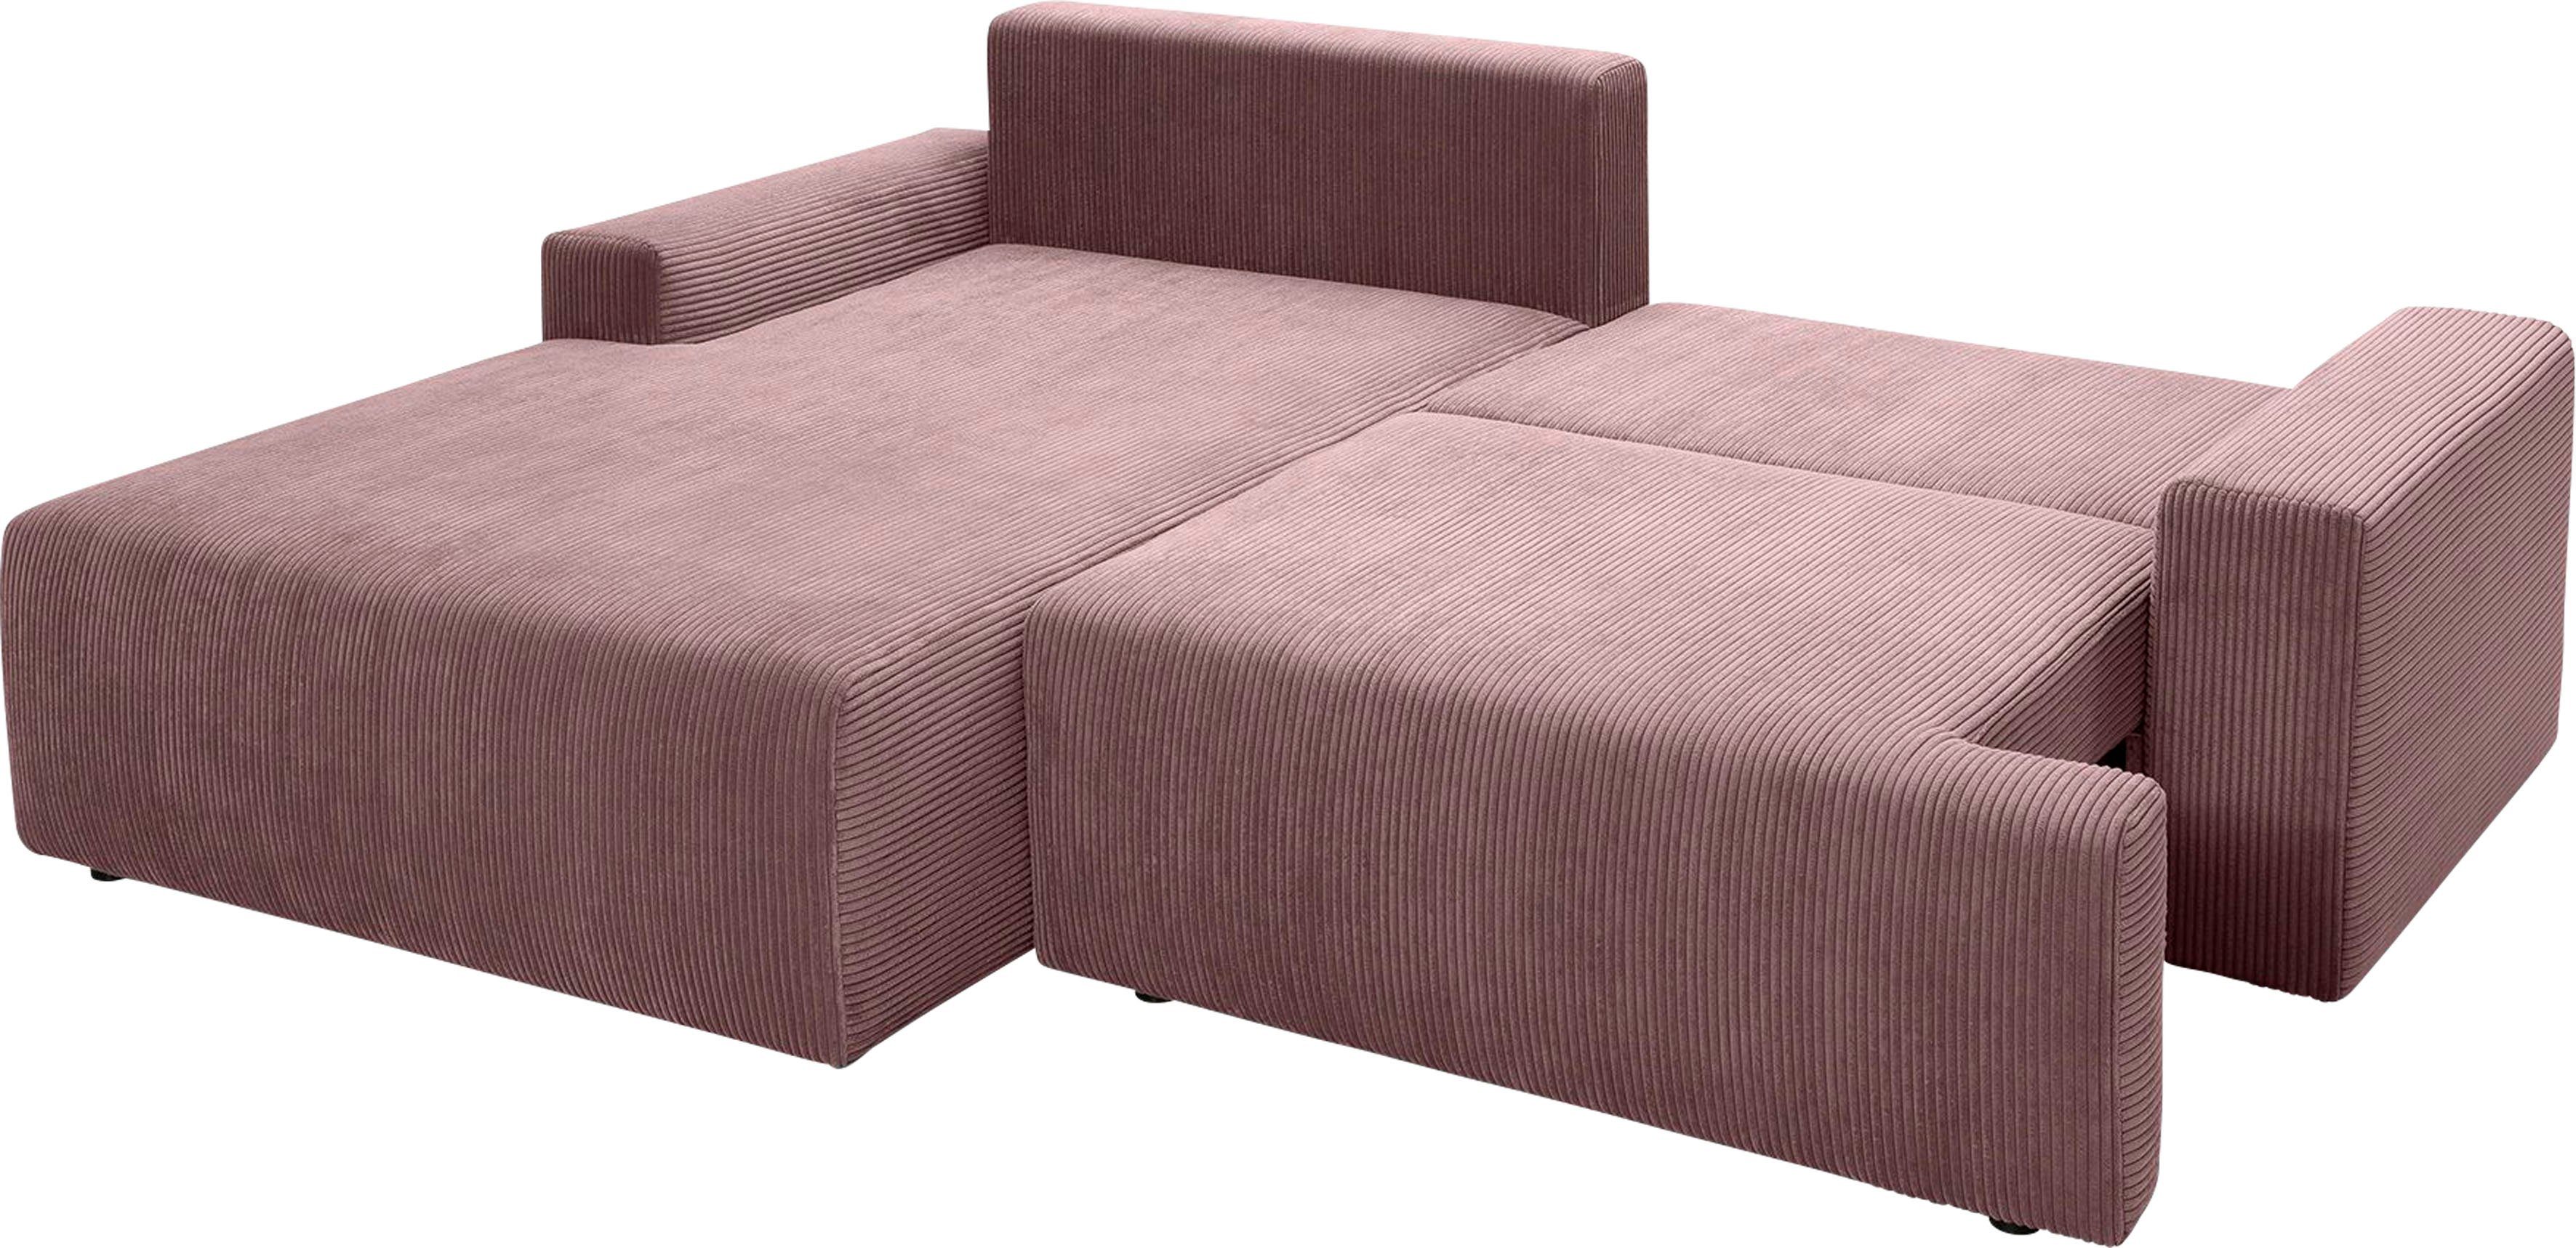 Cord-Farben Ecksofa und Bettkasten - fashion in inklusive exxpo verschiedenen Bettfunktion Orinoko, rose sofa